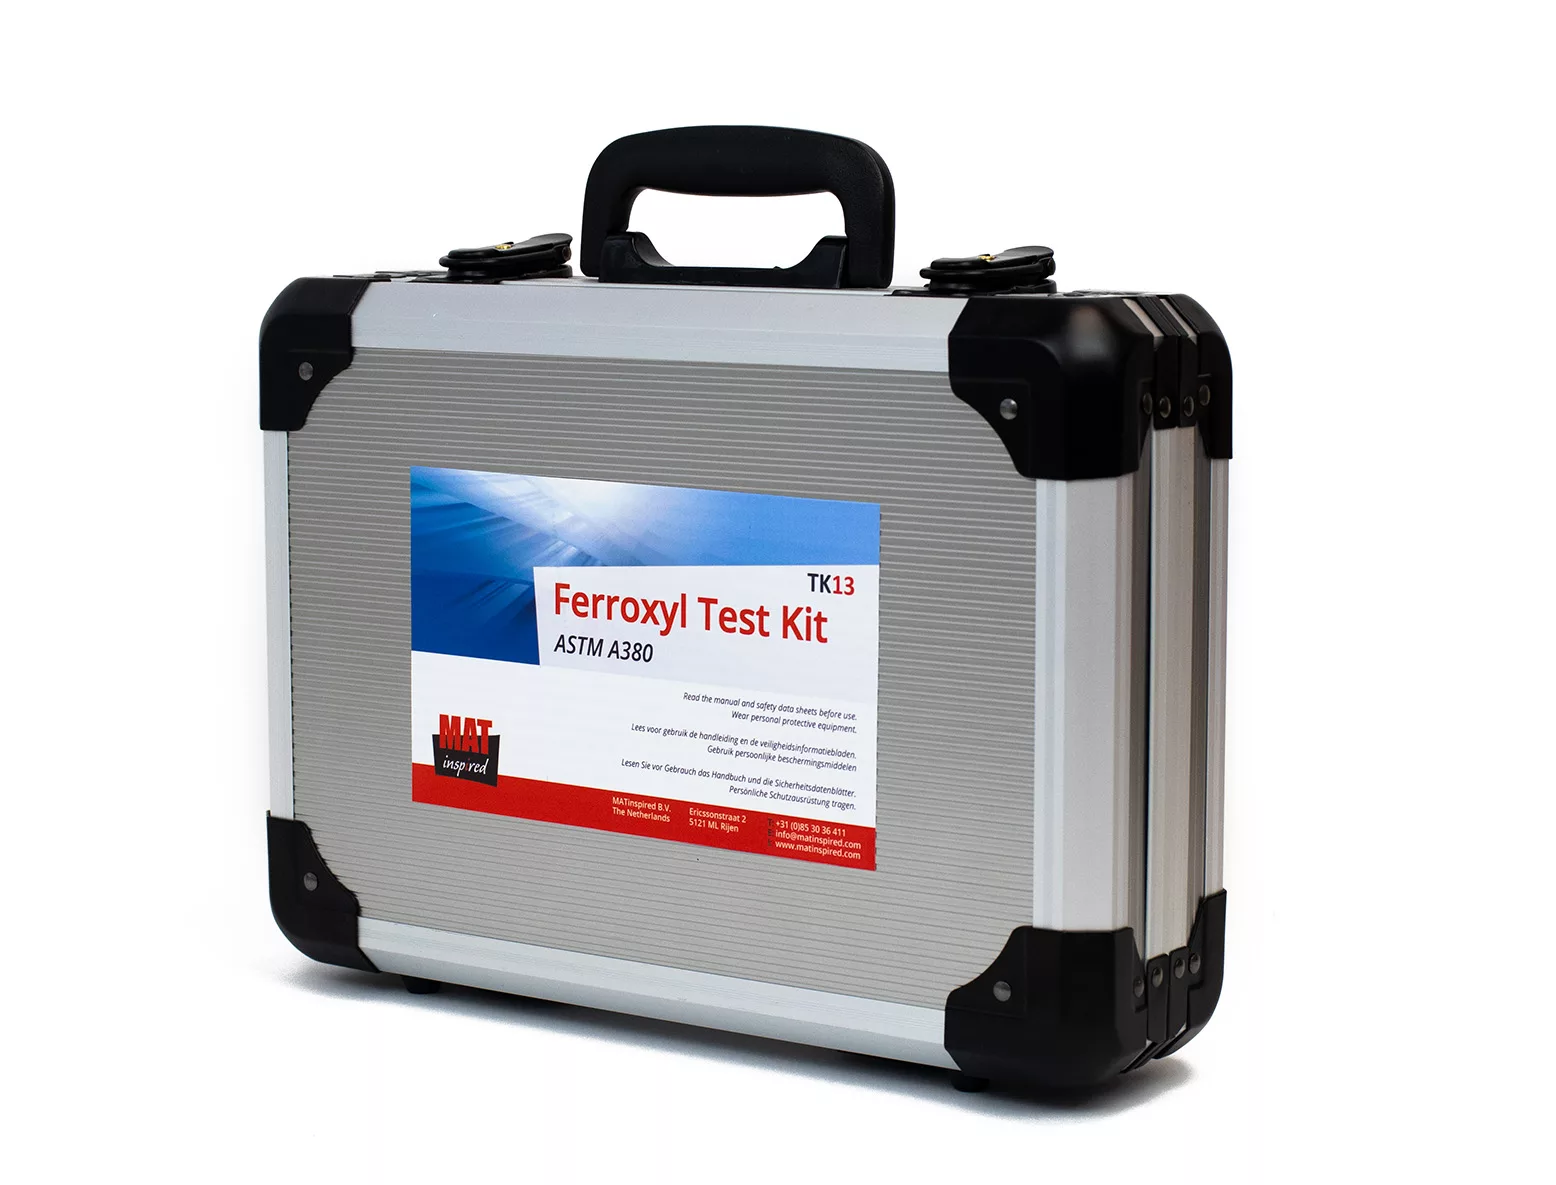 Ferroxyl Test Kit